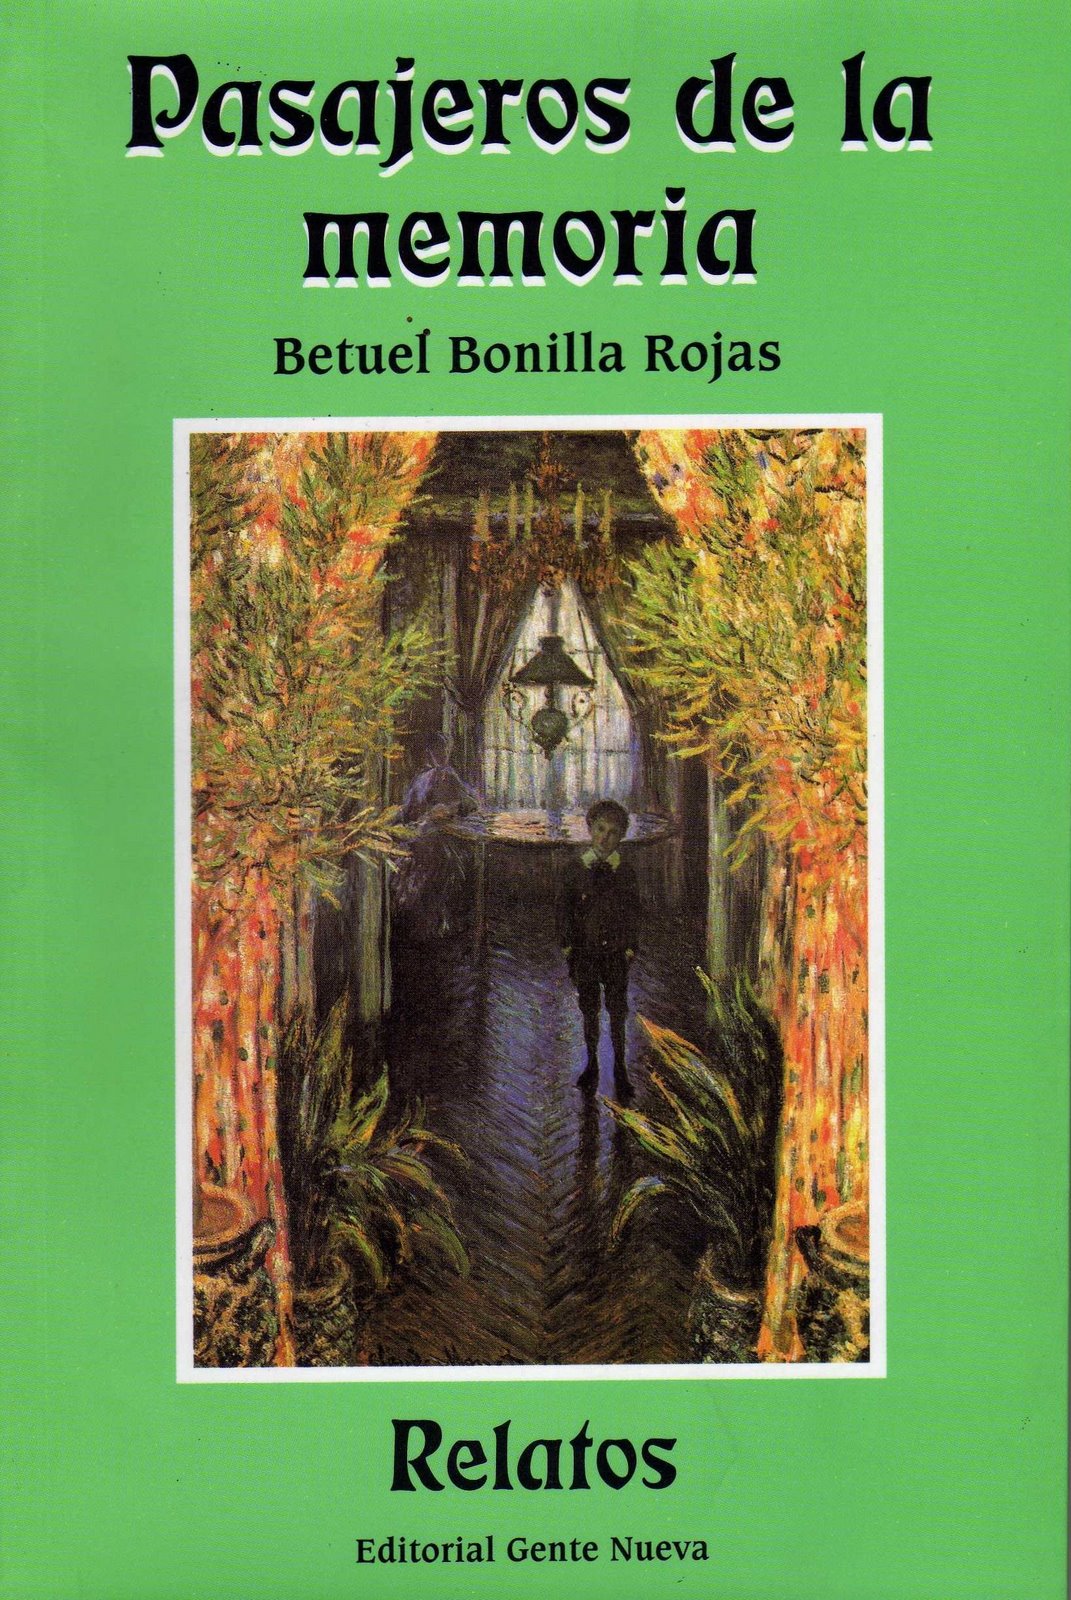 Pasajeros de la memoria, primer libro de cuentos, Gente Nueva Editores, 2001. Incluye nueve cuentos